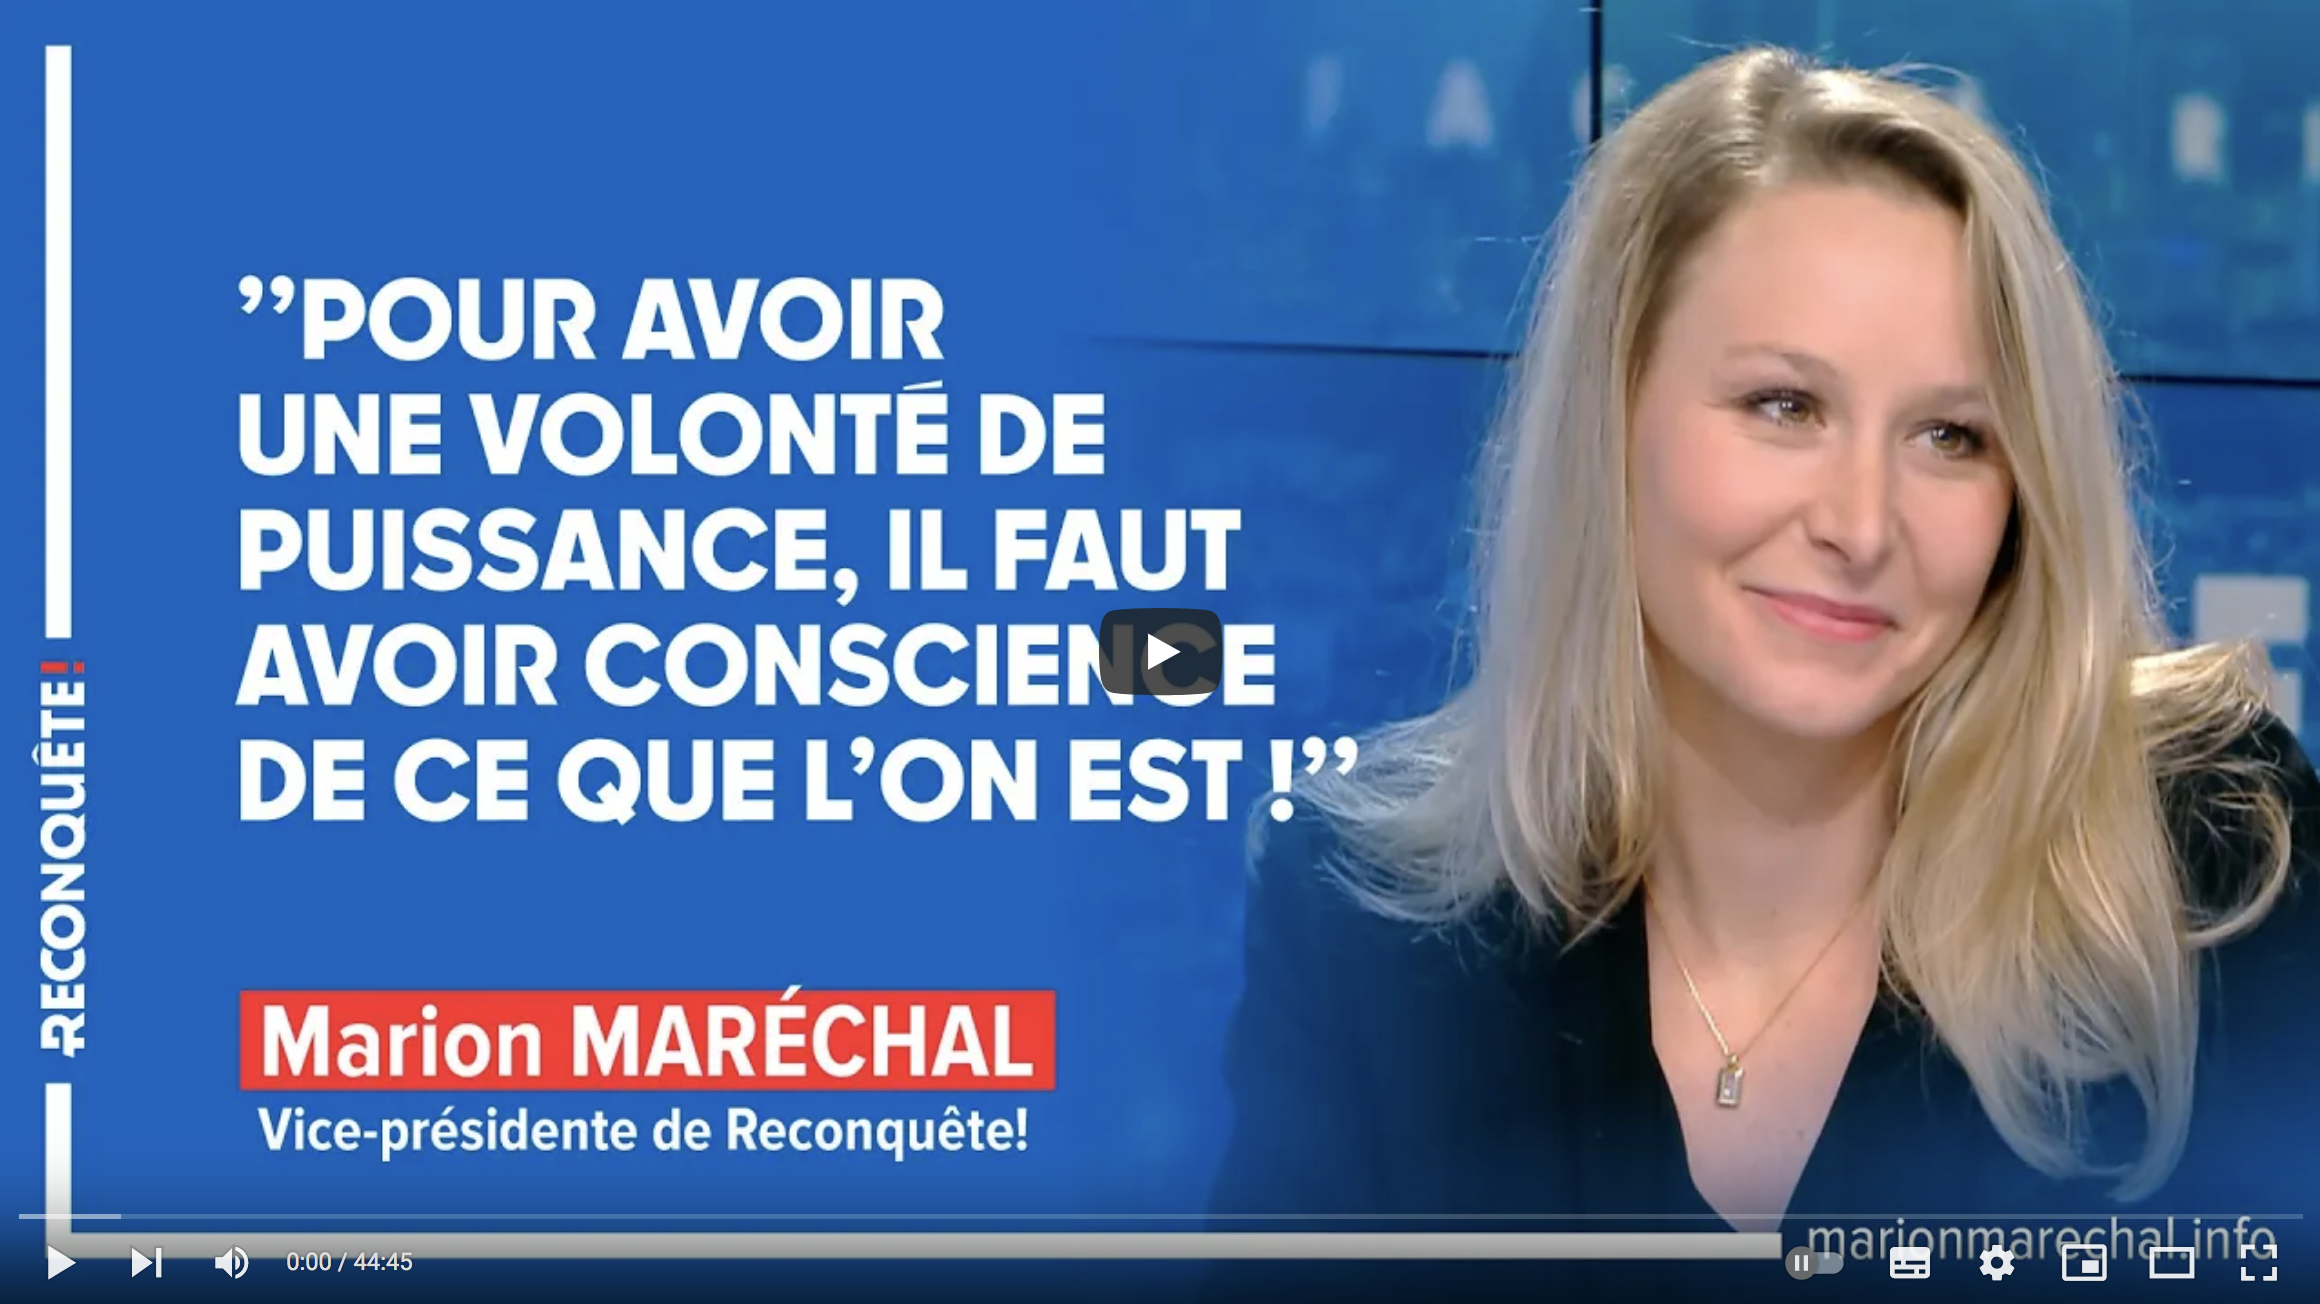 Marion Maréchal : “Pour avoir une volonté de puissance, il faut avoir conscience de ce que l’on est” (VIDÉO)